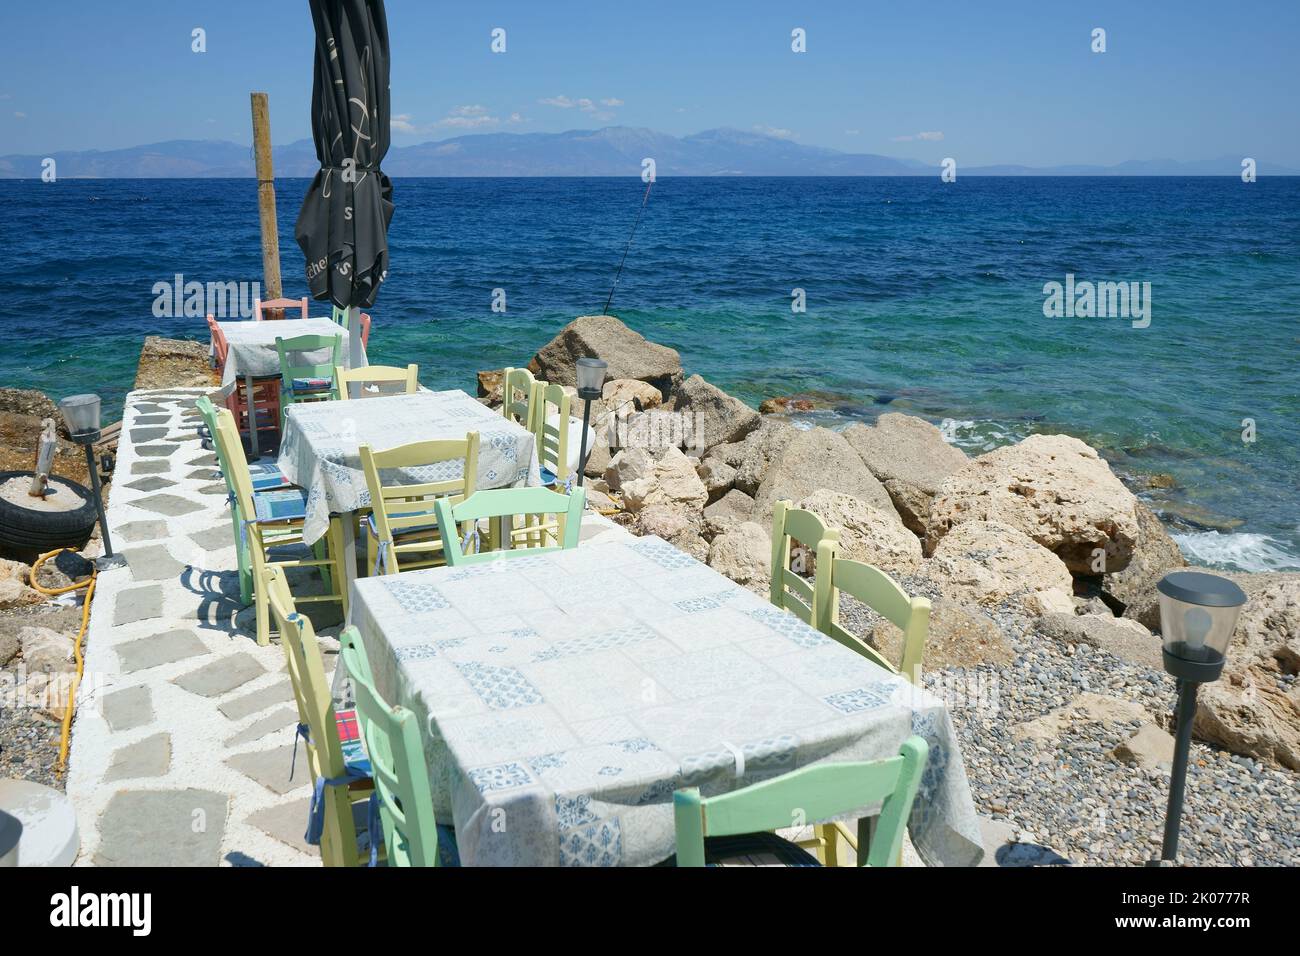 Tables on the Beach in Likoporia, Korinthia, Peloponnese, Greece Stock Photo